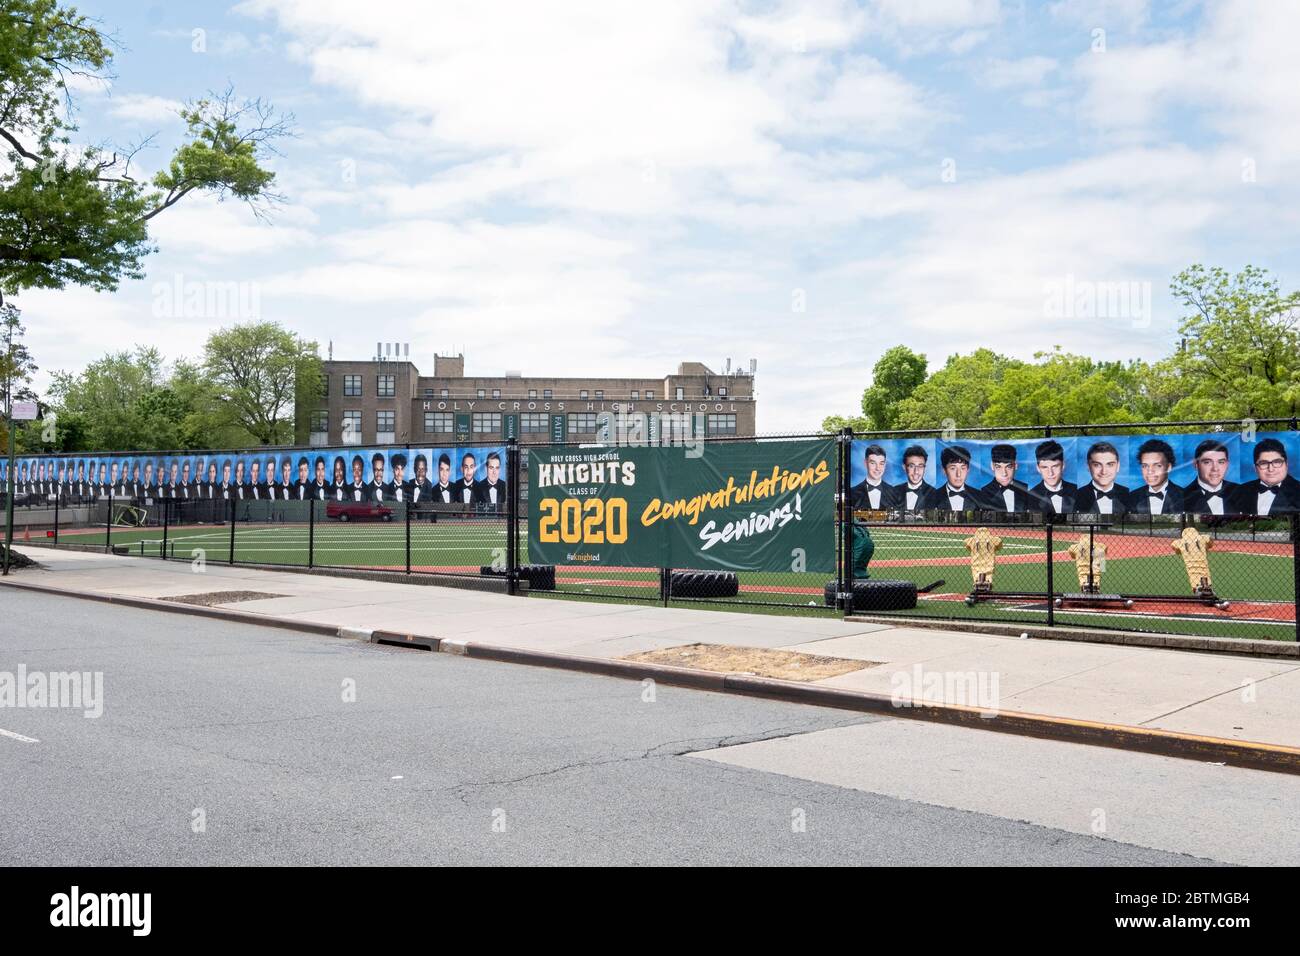 Al posto di una cerimonia di laurea, la Scuola superiore della Santa Croce appese un banner e foto degli anziani laureati. A Flushing, Queens, New York. Foto Stock